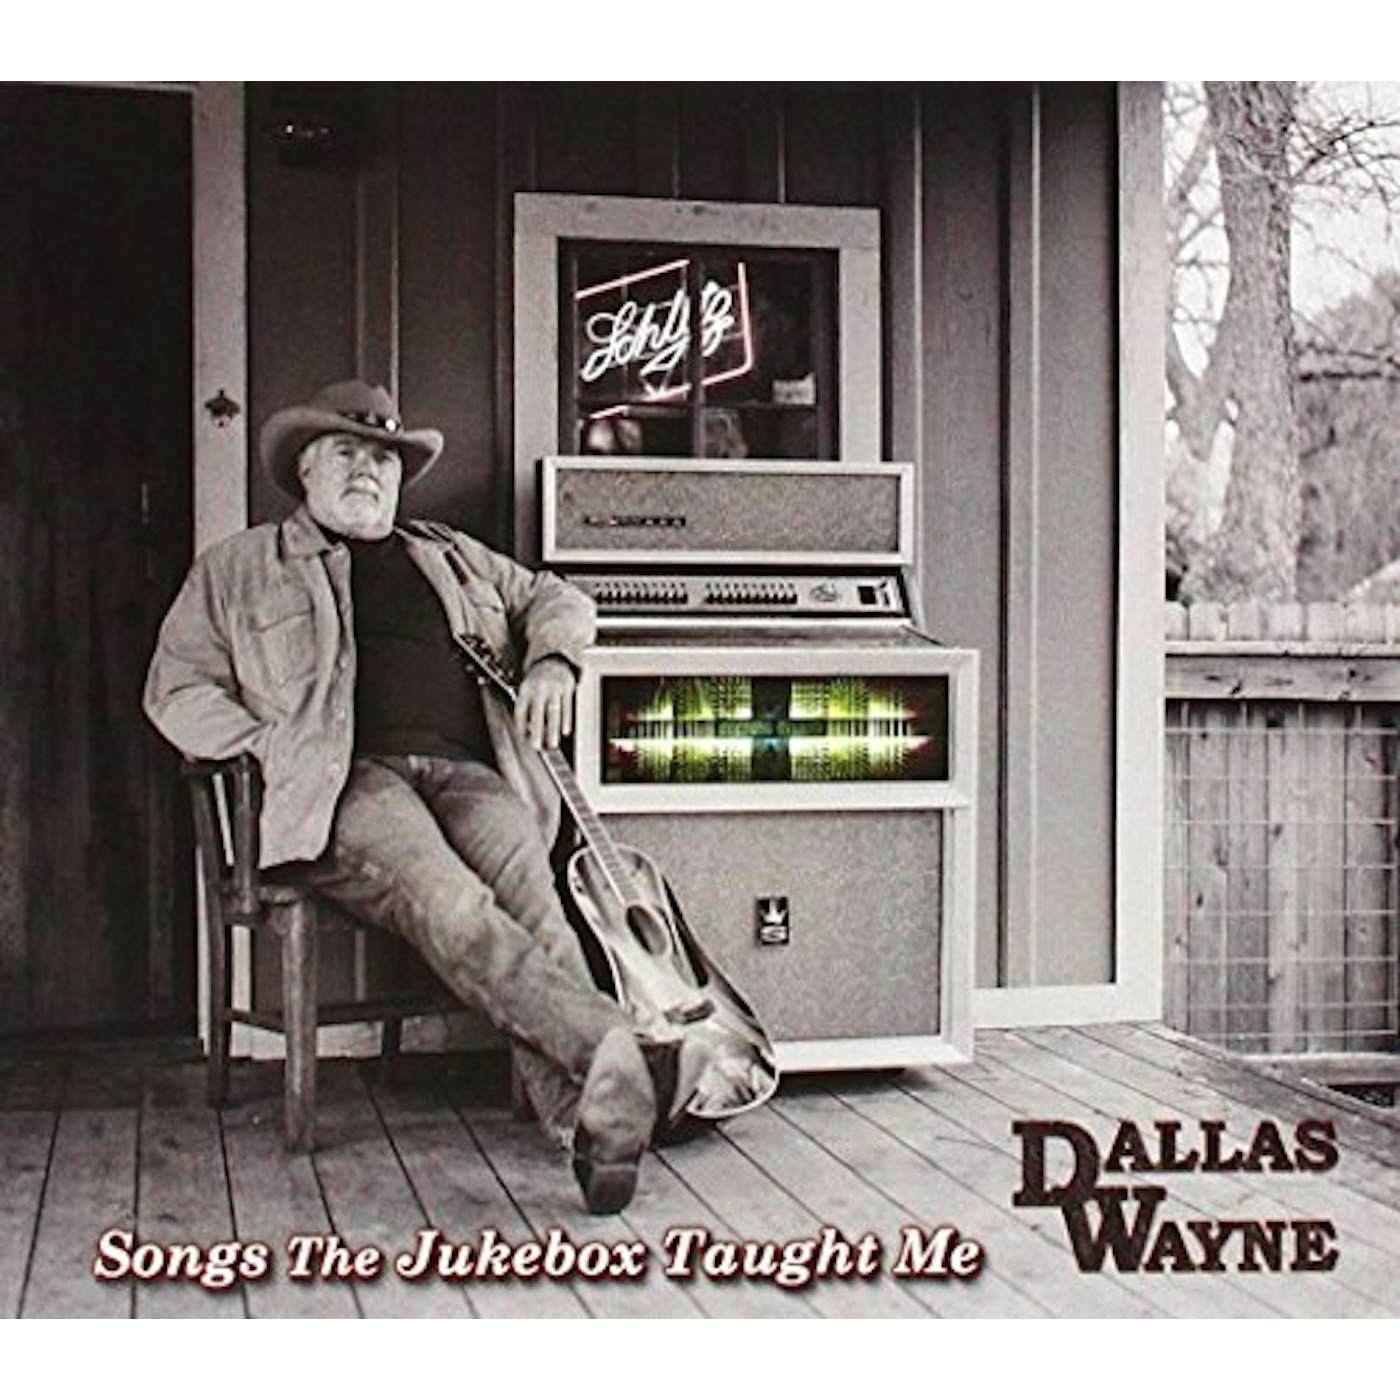 Dallas Wayne SONGS THE JUKEBOX TAUGHT ME CD